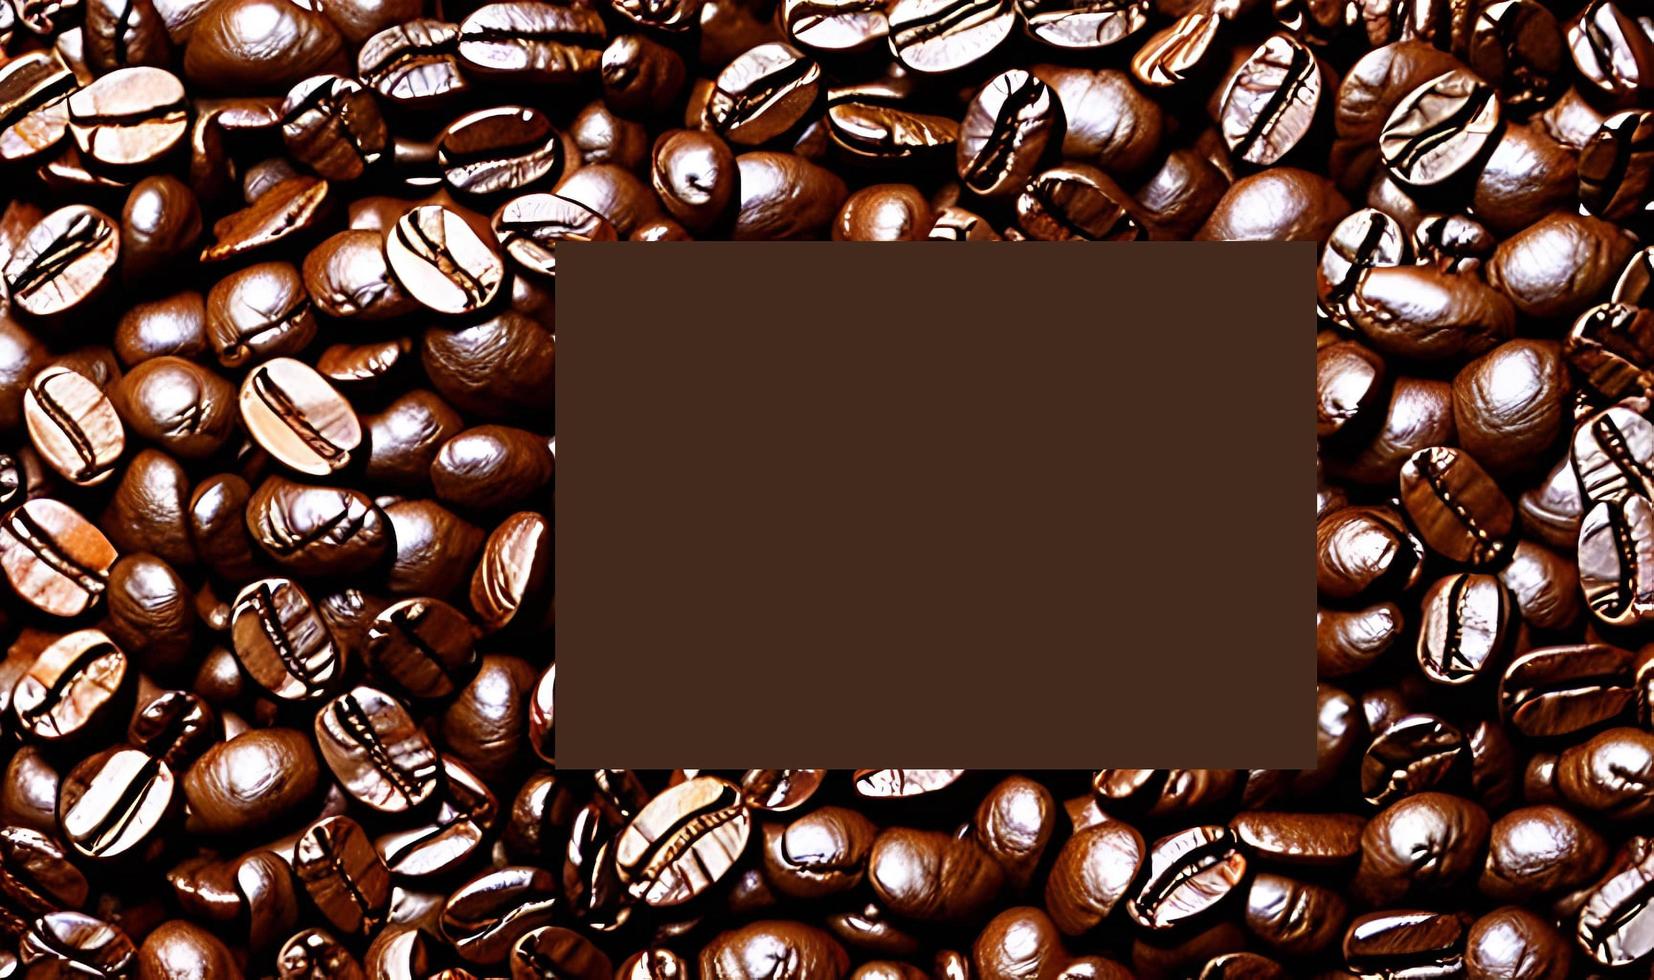 frisch geröstete Kaffeebohnen. kann als Hintergrund verwendet werden. Kaffee Zusammensetzung. foto